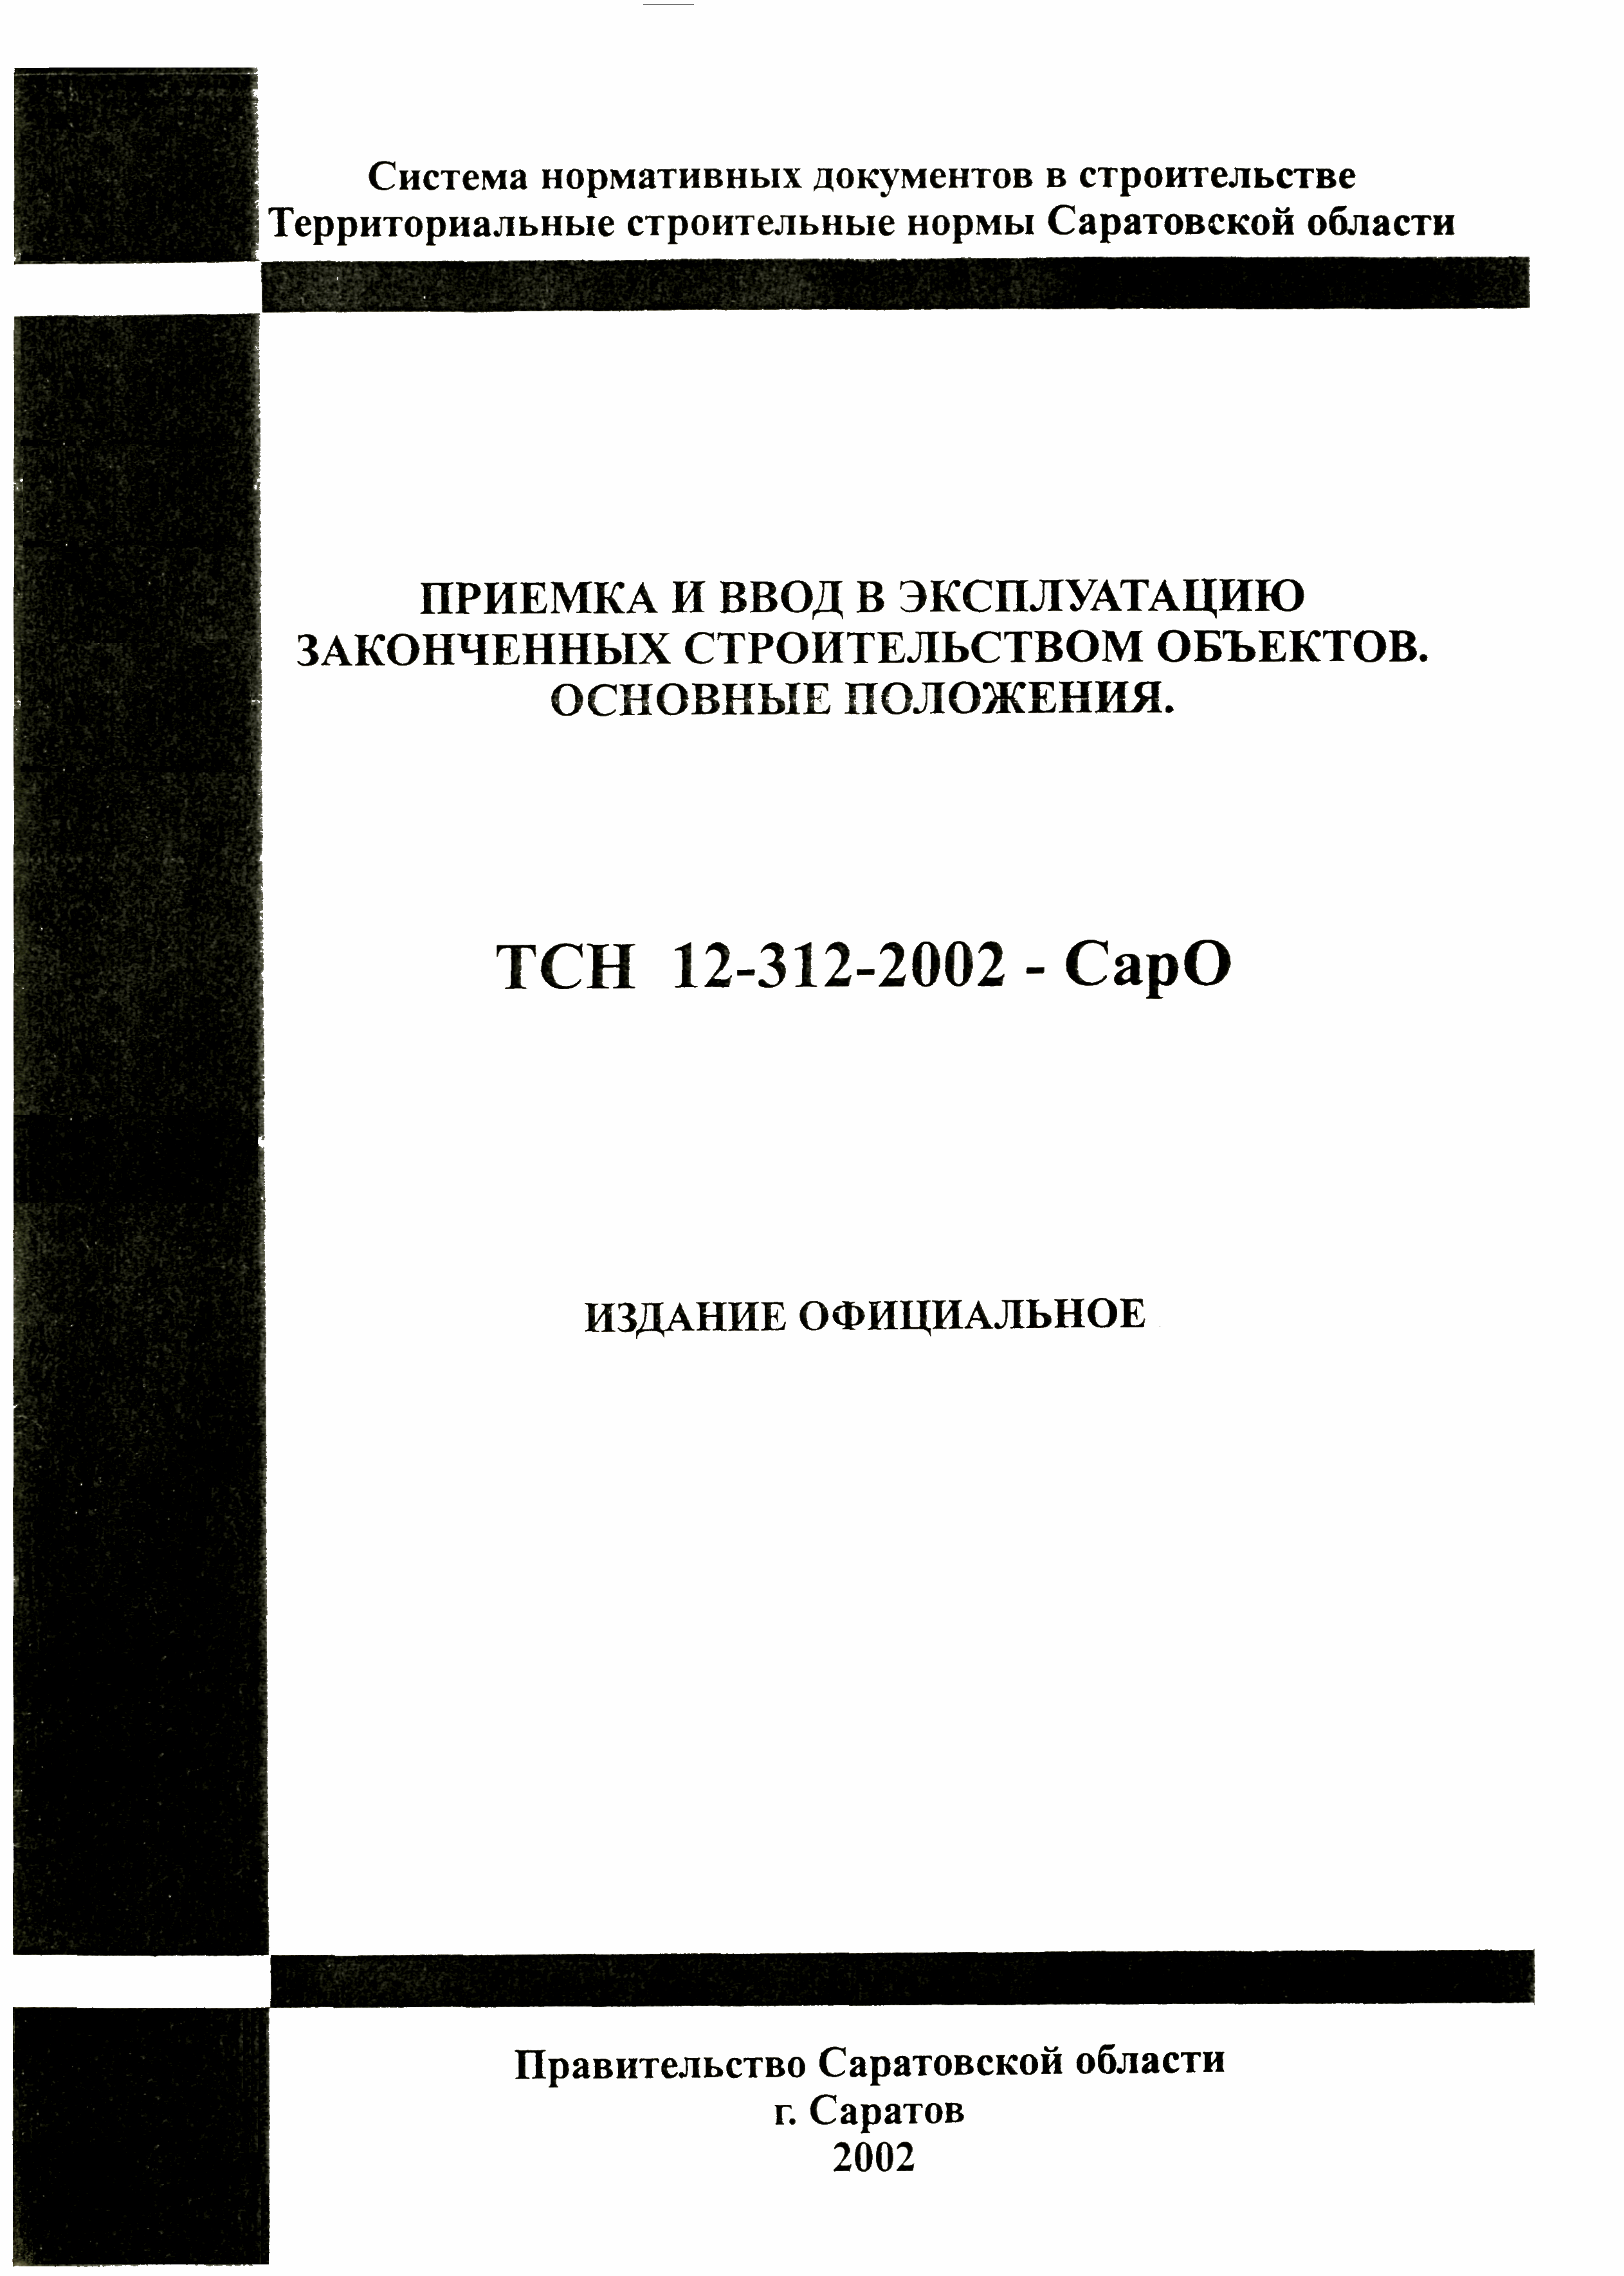 ТСН 12-312-2002